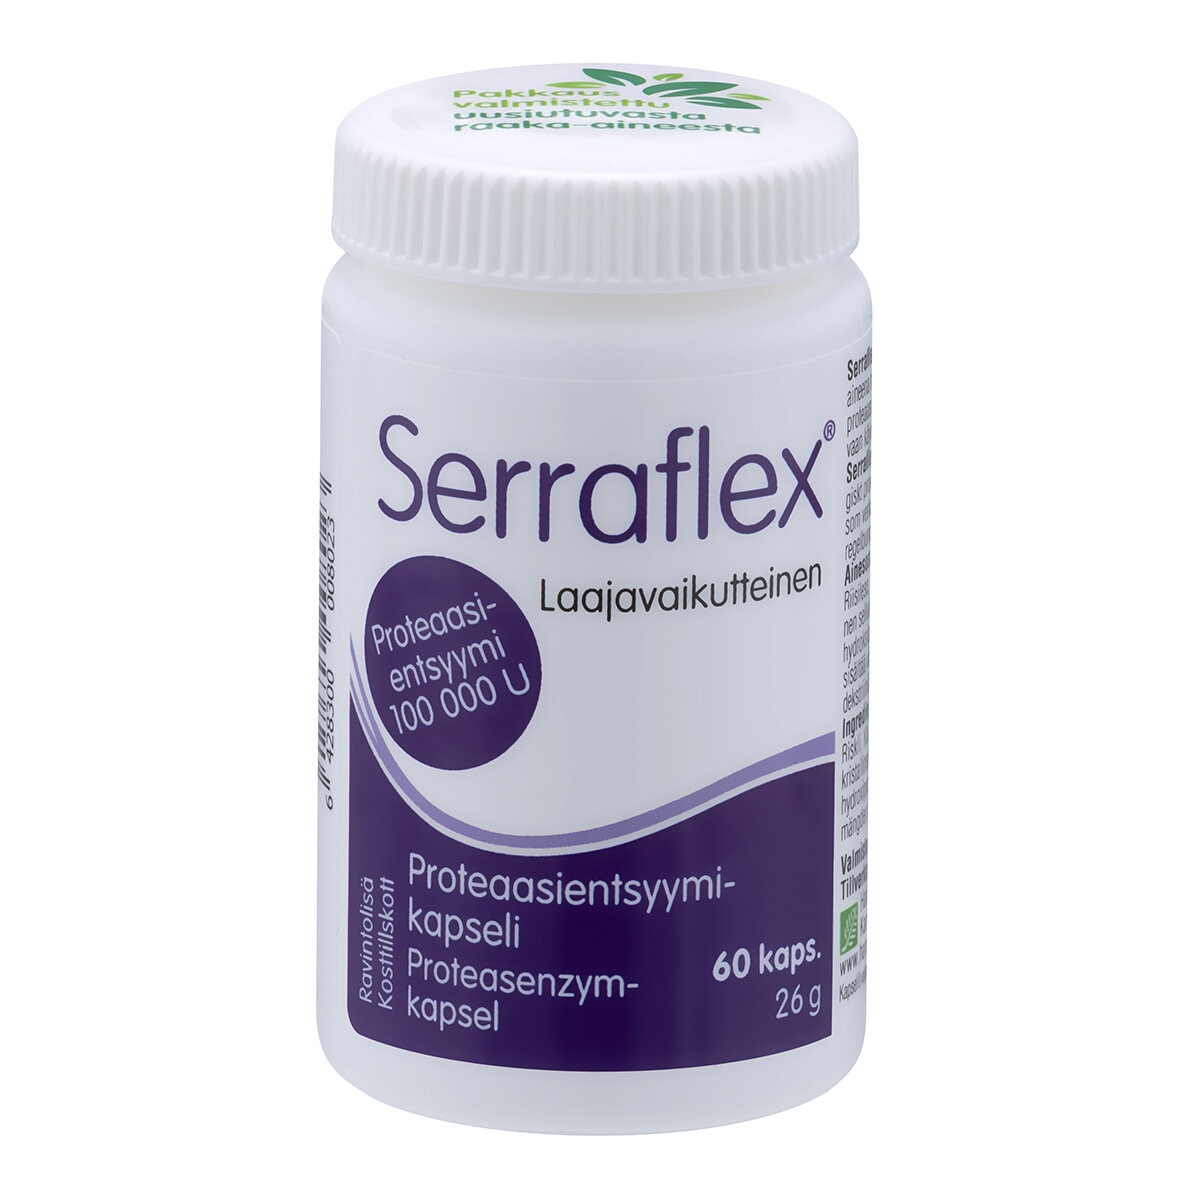 Serraflex proteaasientsyymikapseli